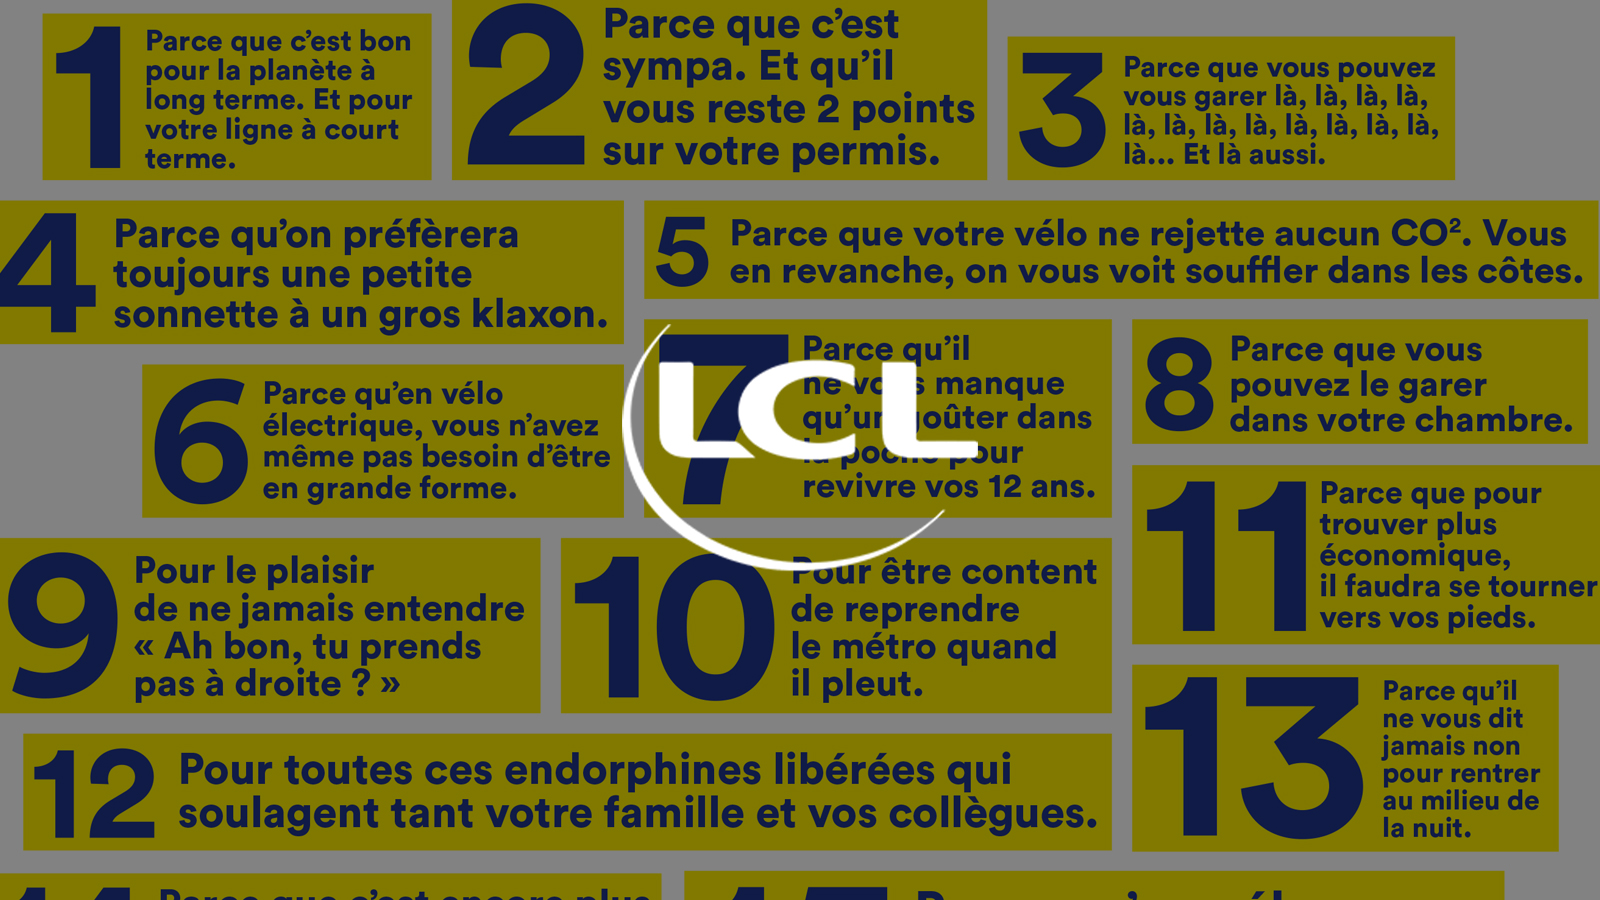 2019 lcl manifest - Cas LCL Tour de France 2019